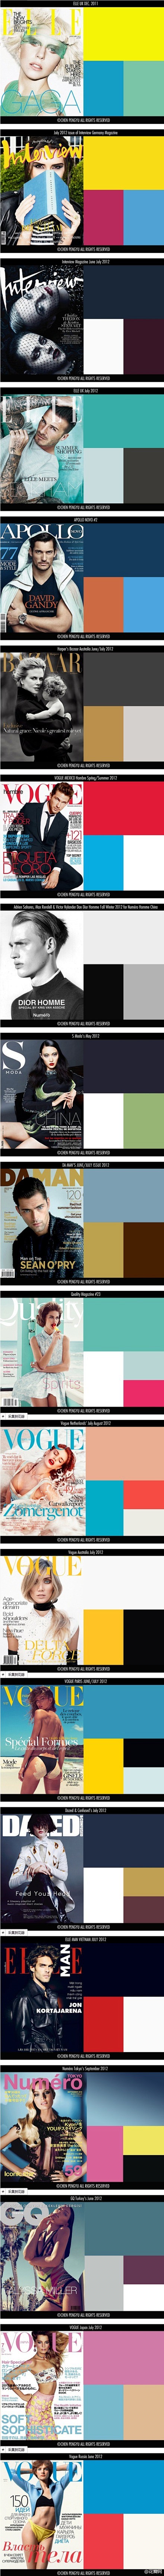 大牌杂志封面也能教你配色法则，色彩、时尚...